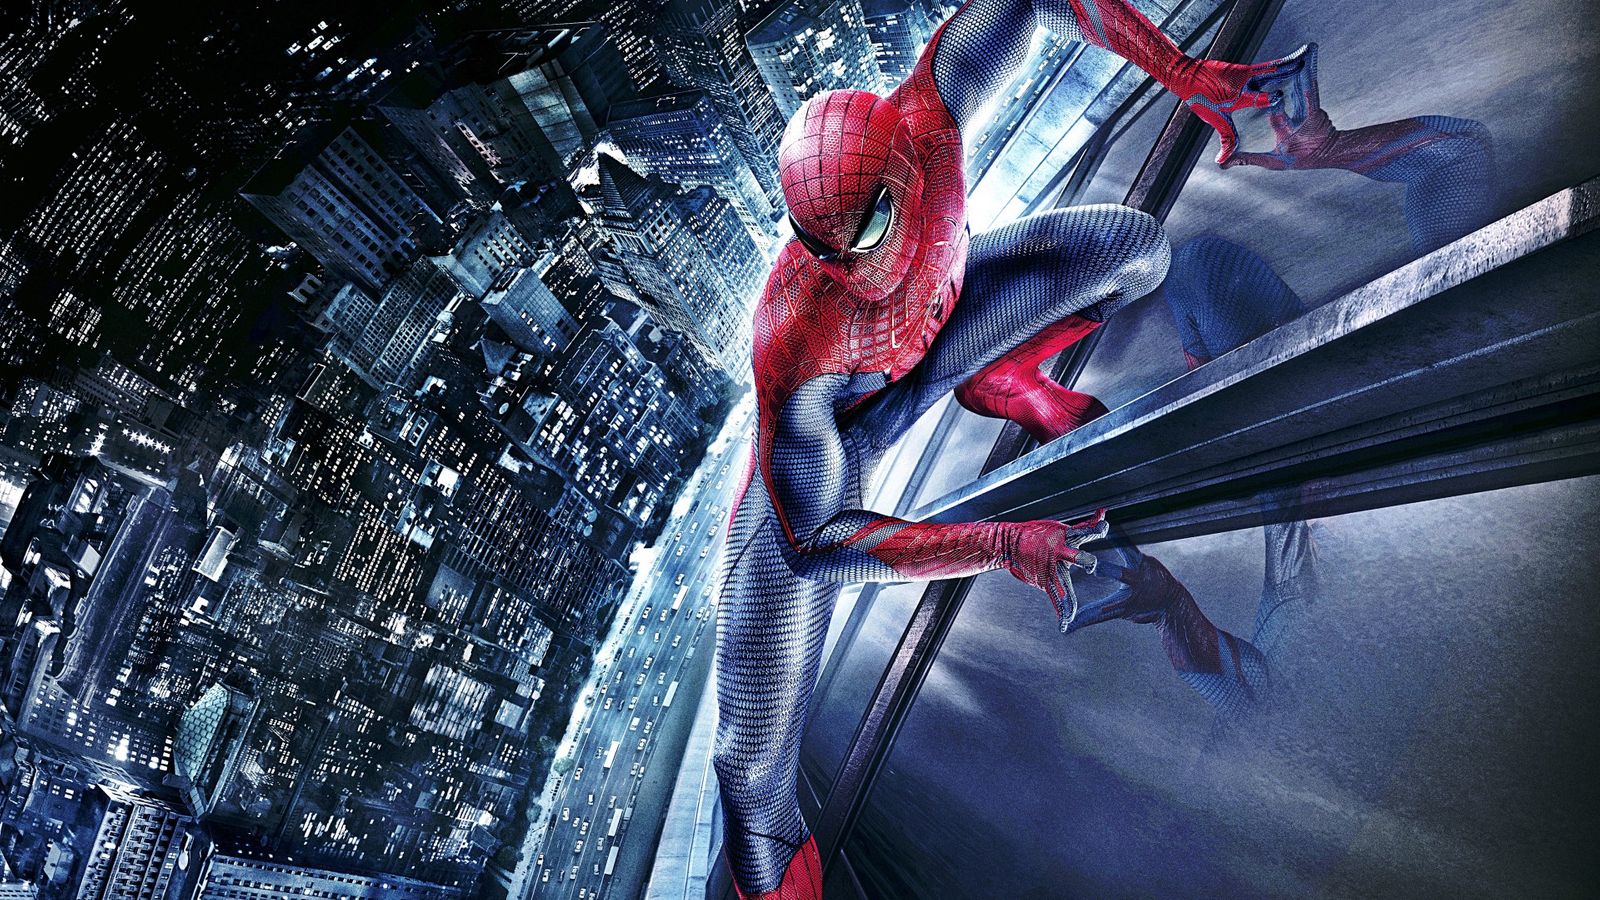 Spider Man 1080p - Spiderman Background - 1600x900 Wallpaper 